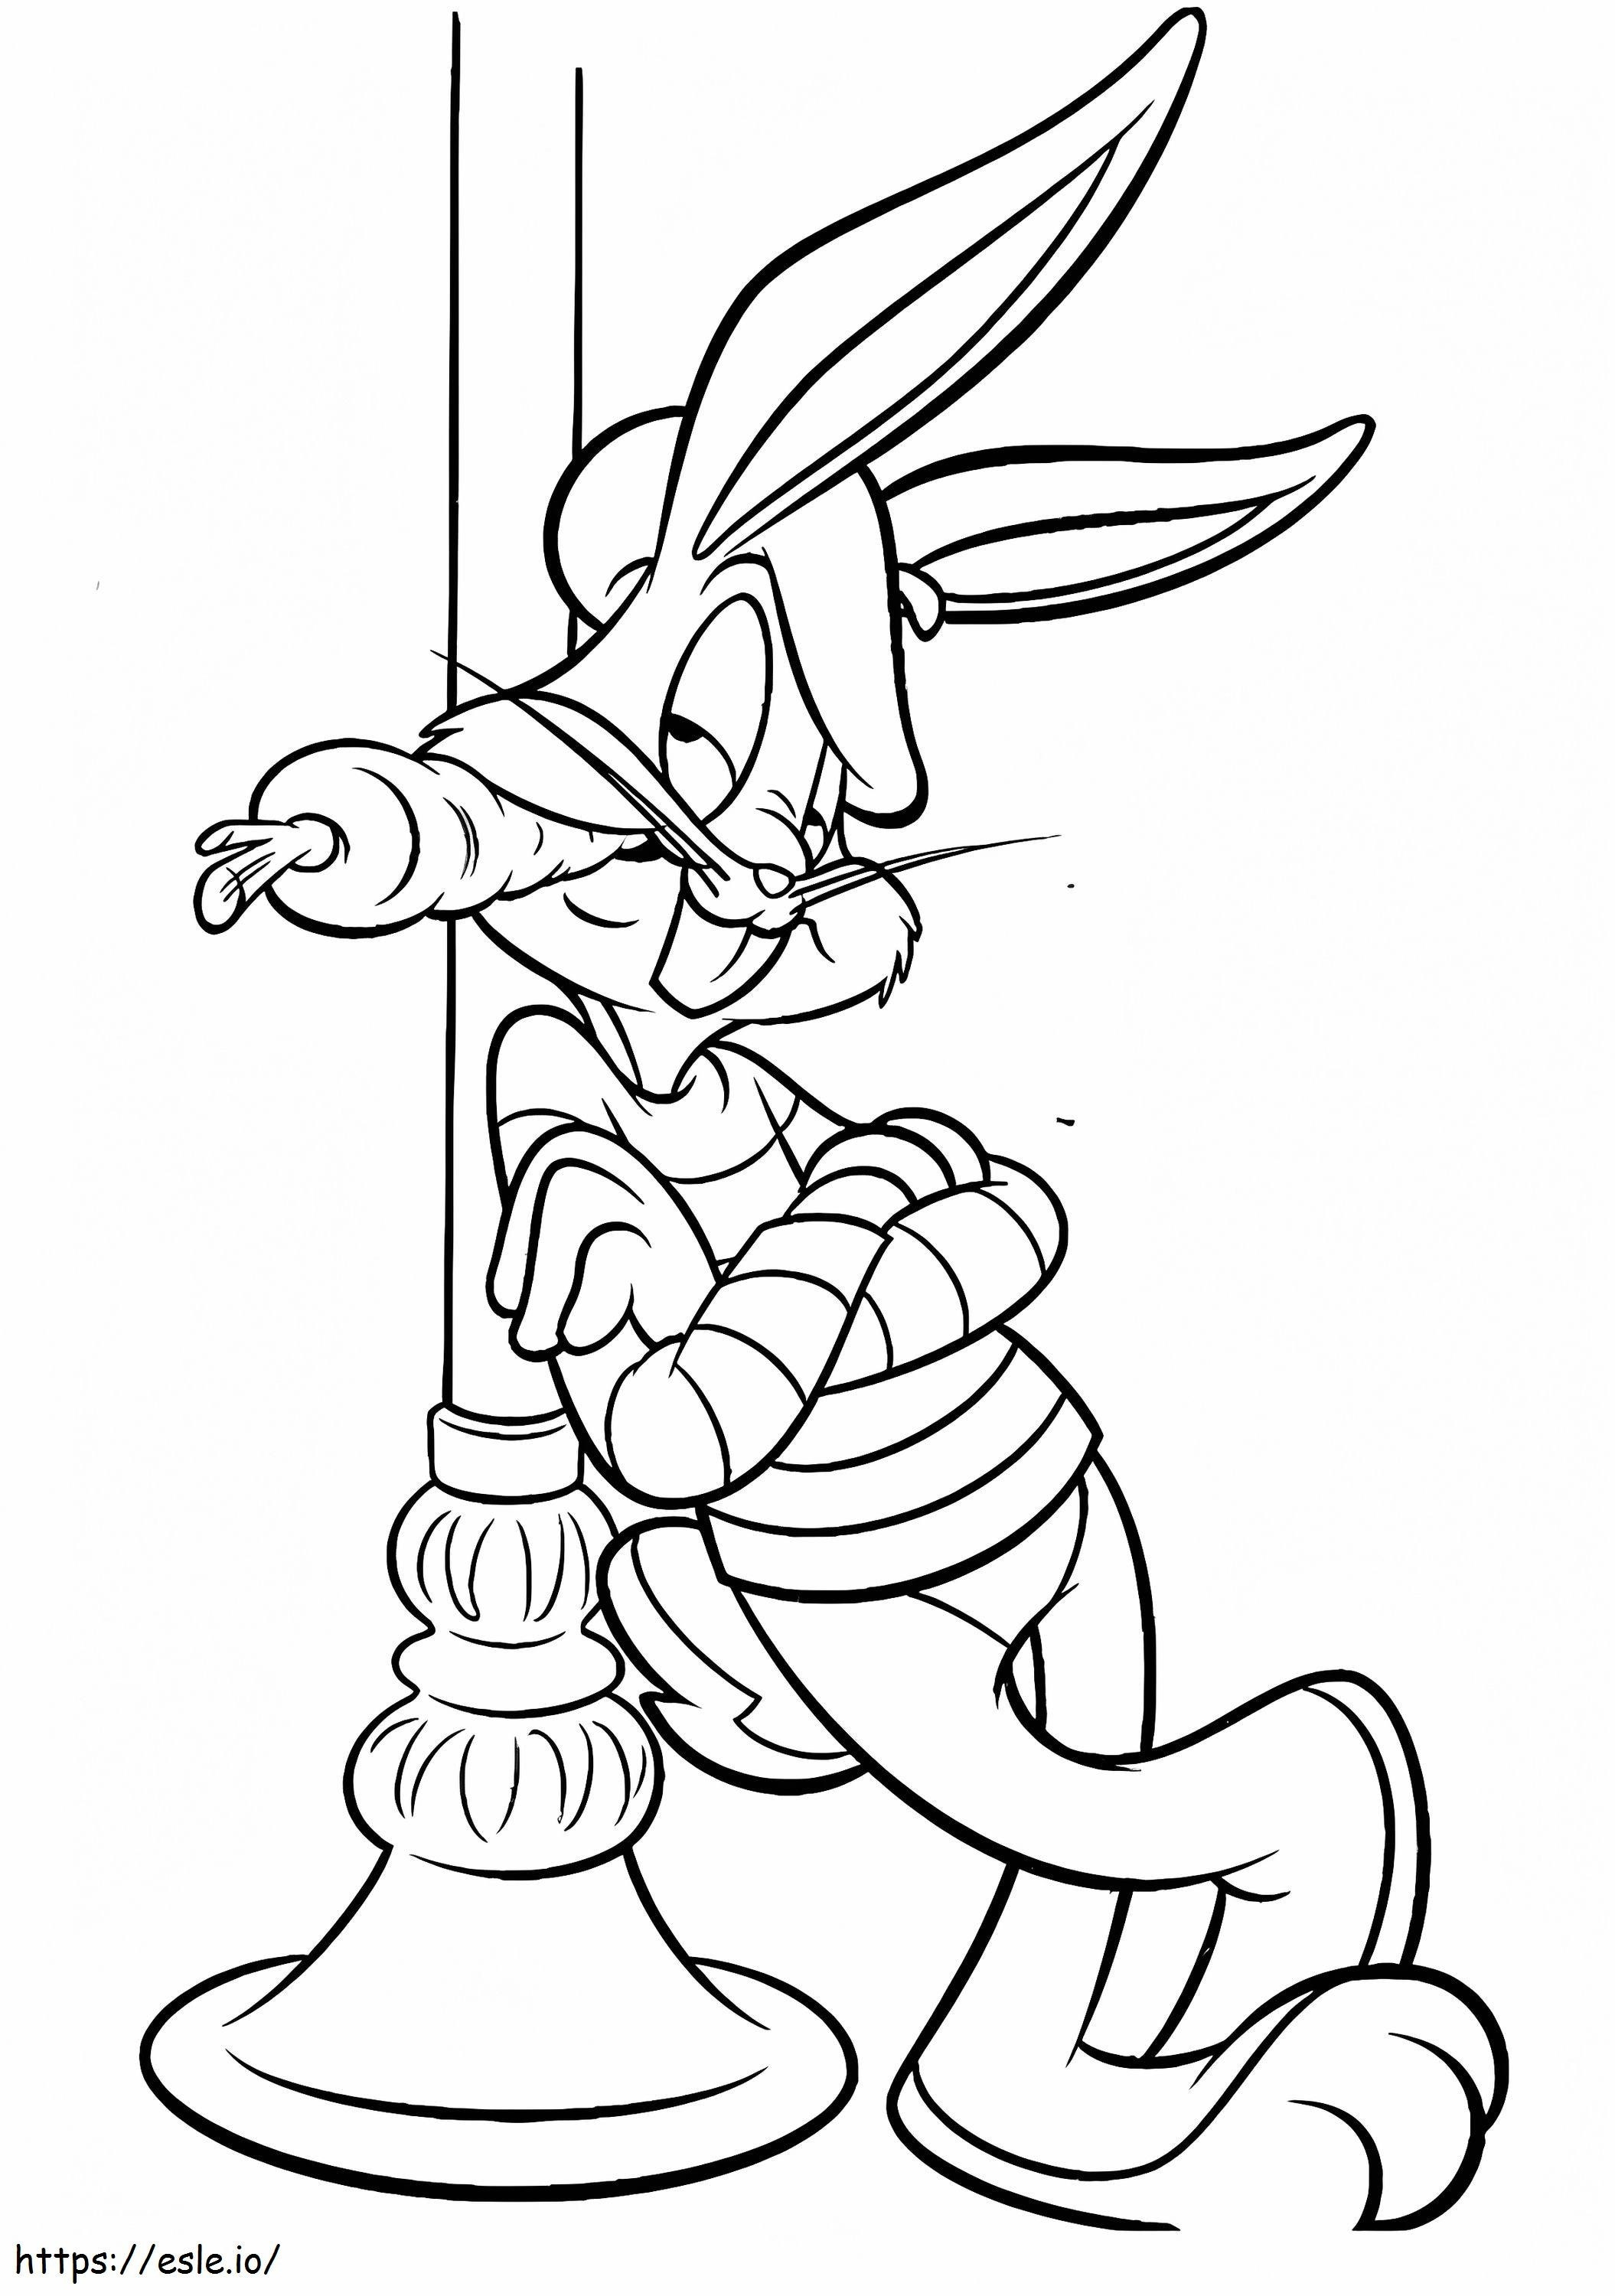 Csodálatos Bug Bunny kifestő